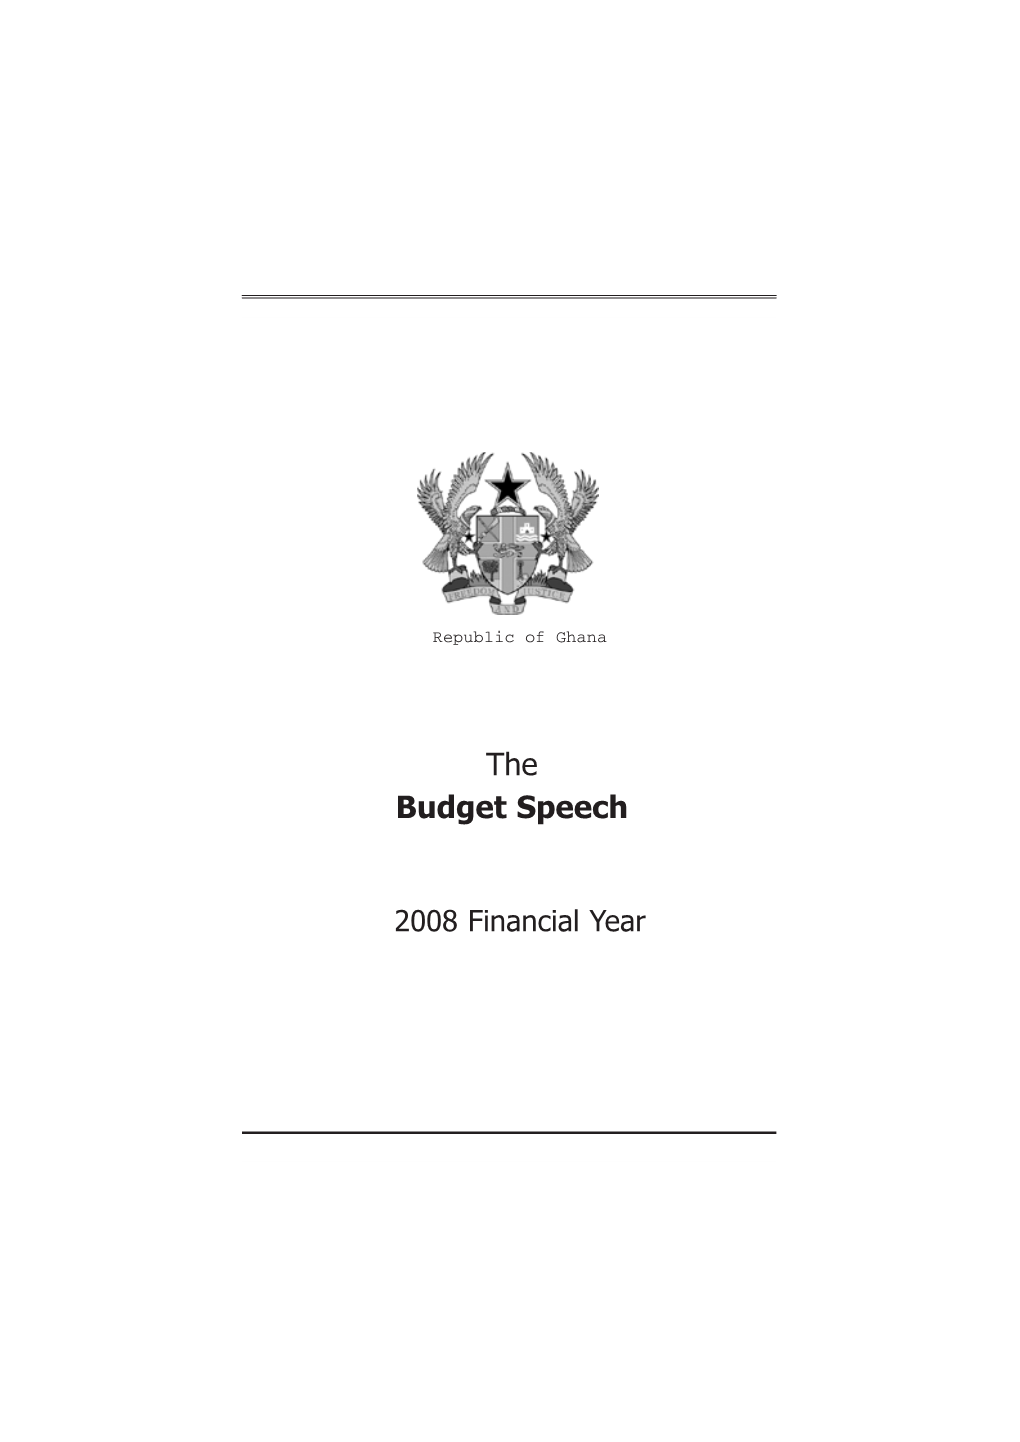 The Budget Speech